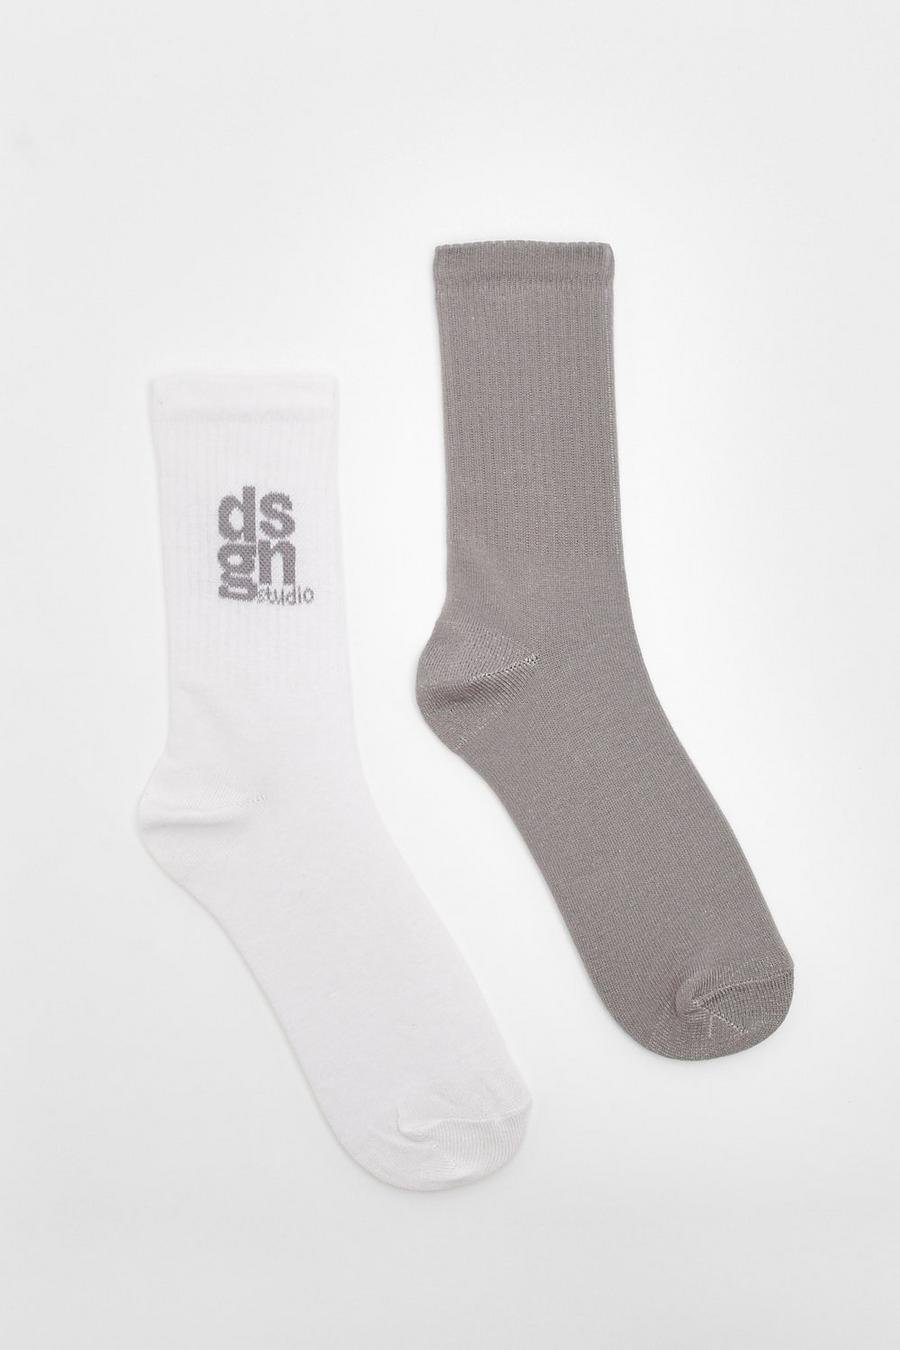 Lot de 2 paires de chaussettes de sport à slogan Dsgn Studio, Grey